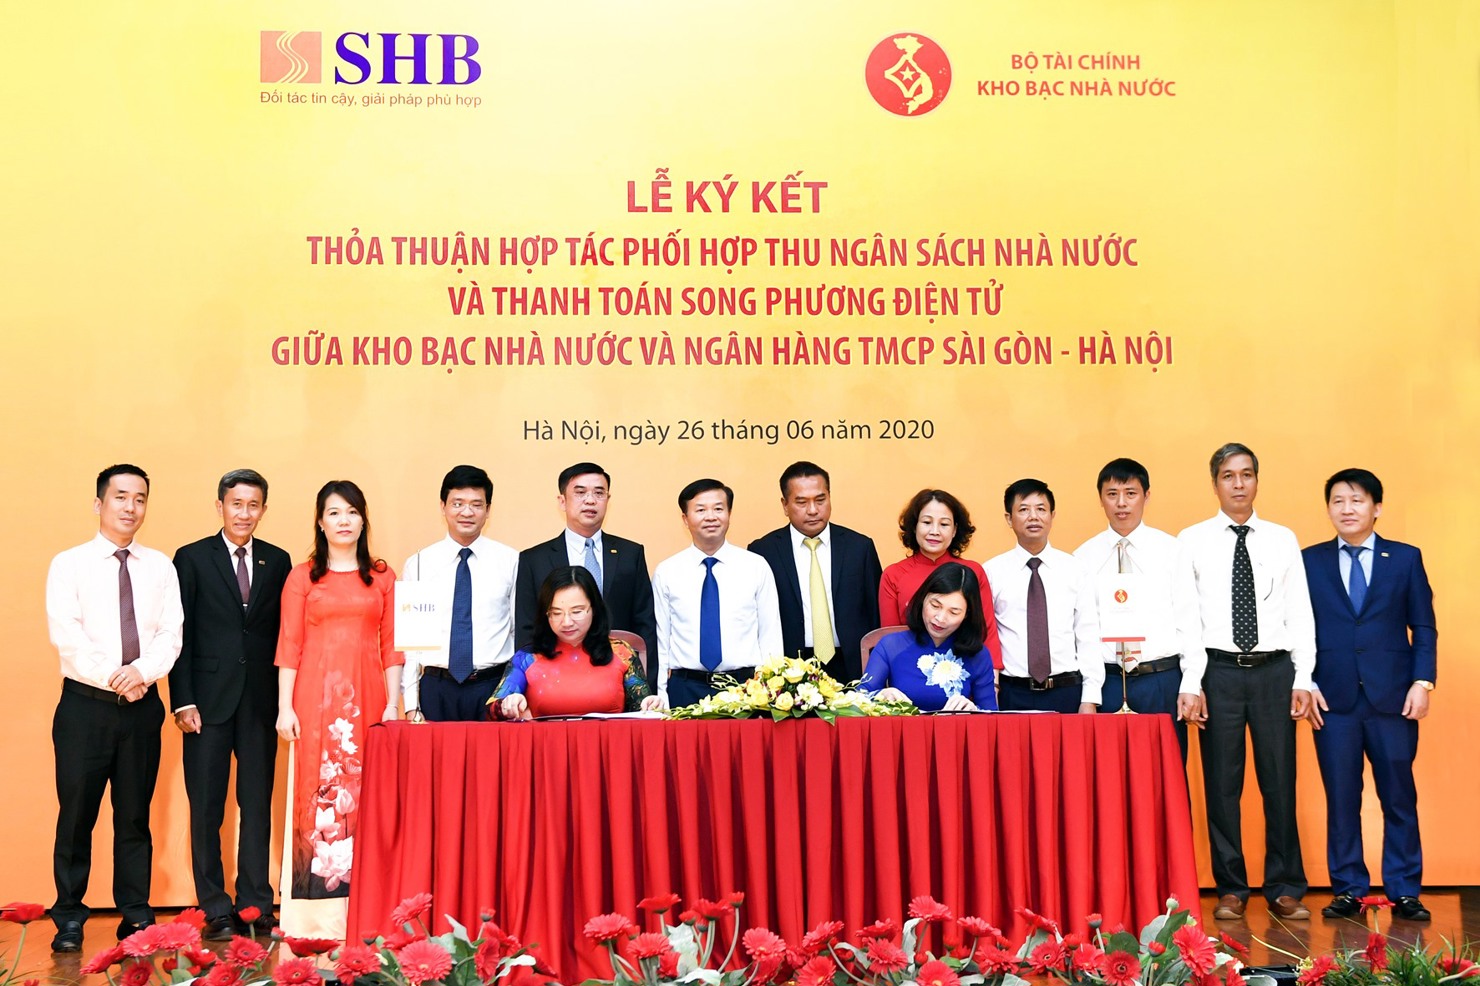 Kho bạc Nhà nước và Ngân hàng TMCP Sài Gòn - Hà Nội ký kết thỏa thuận hợp tác phối hợp thu NSNN và thanh toán song phương điện tử.